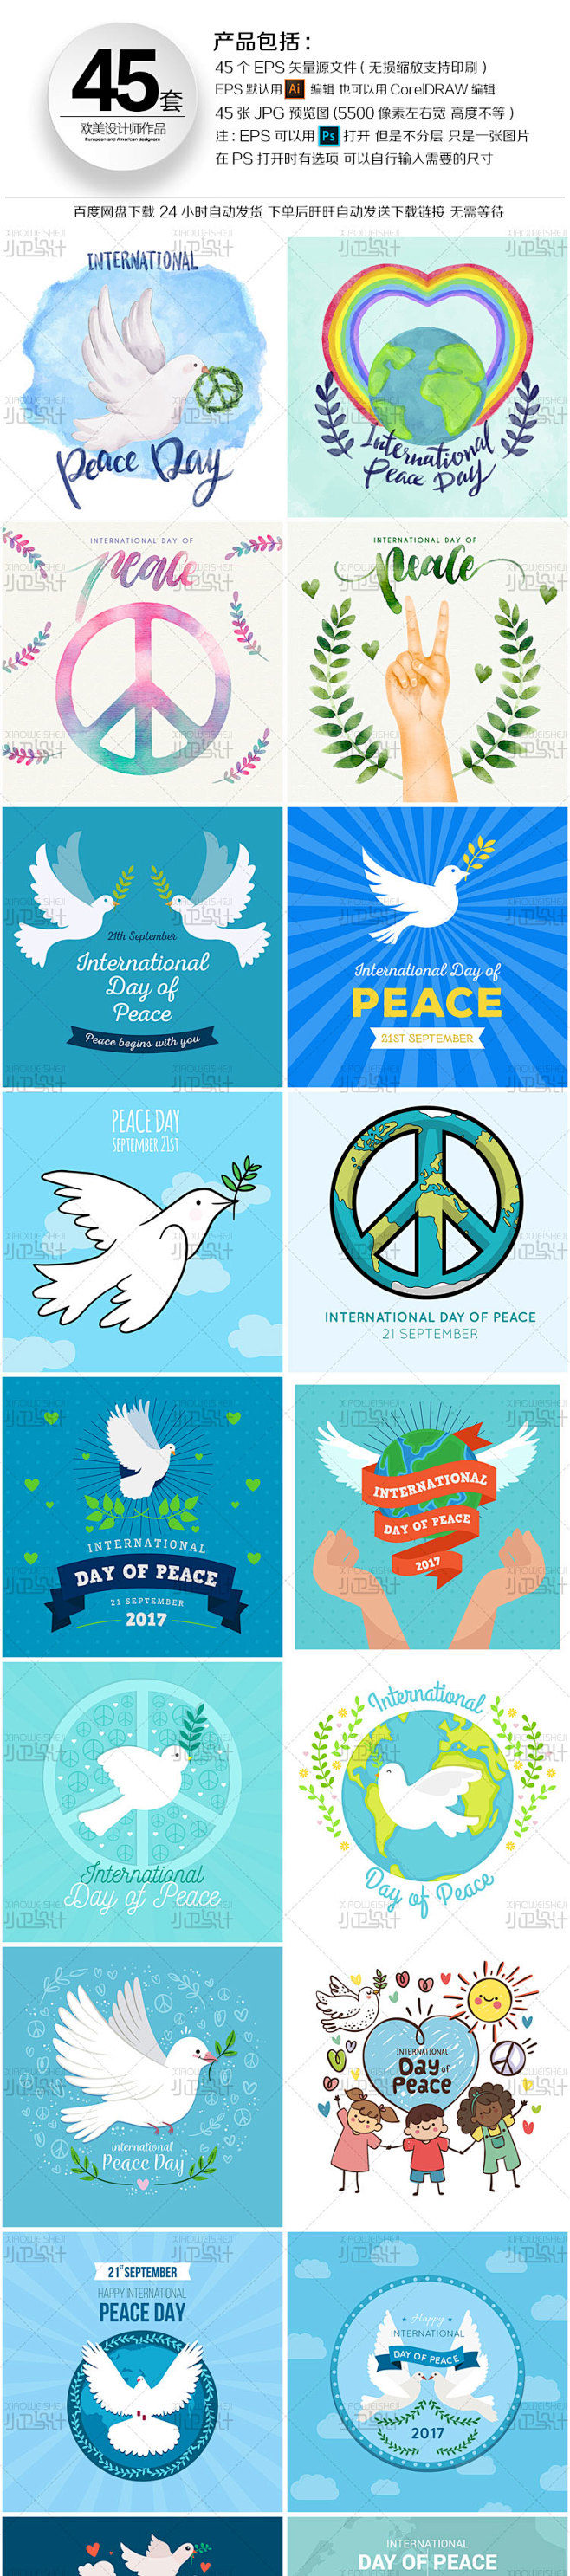 世界和平日和平鸽地球标志海报排版模板ba...